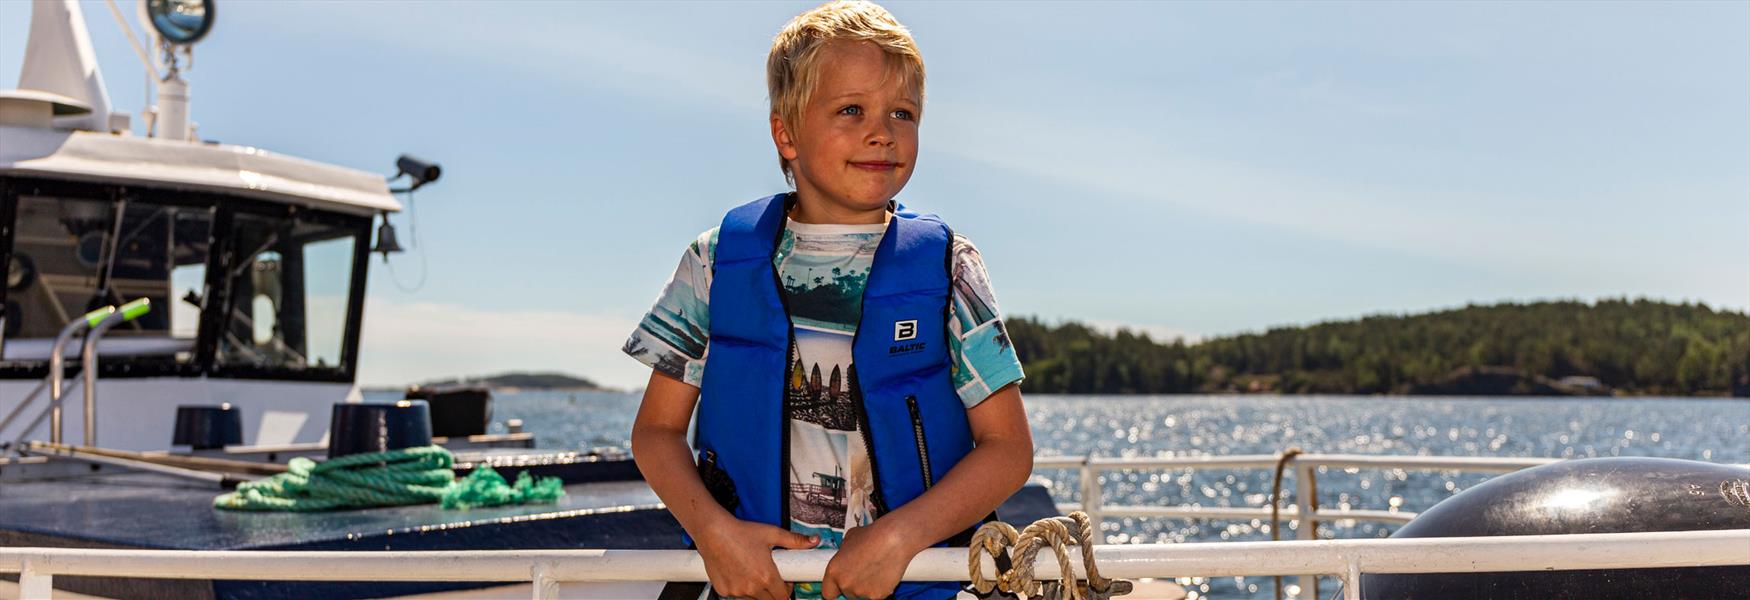 gutt som står om bord på båten